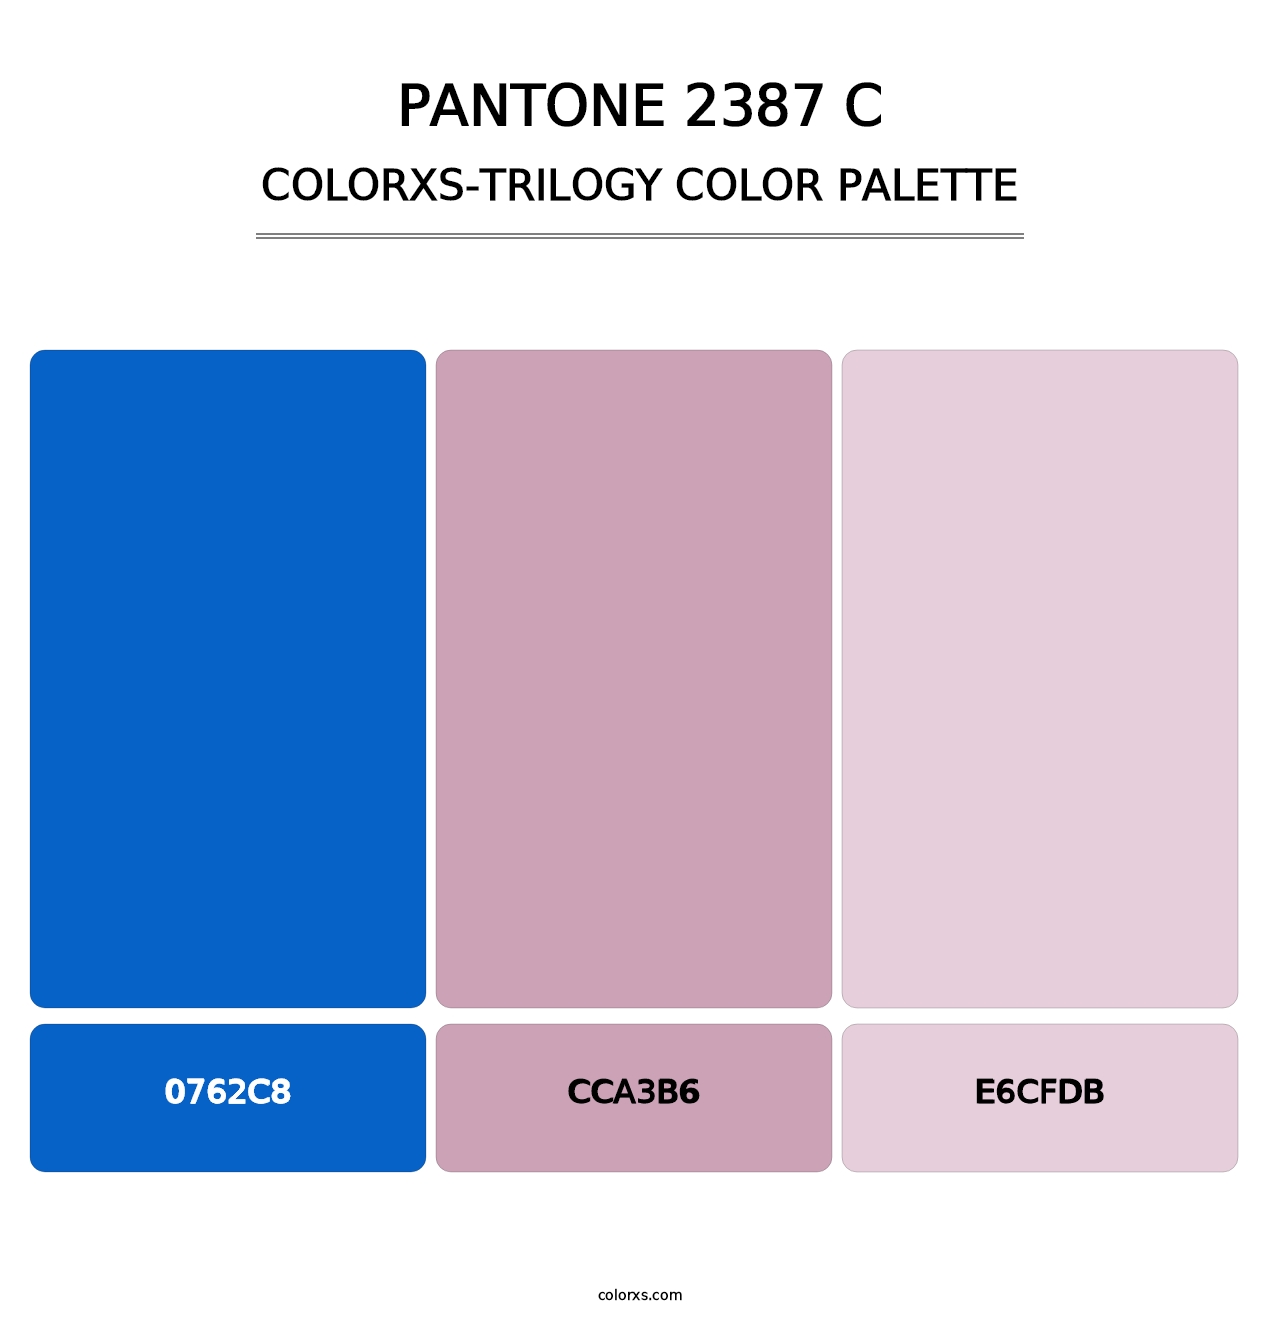 PANTONE 2387 C - Colorxs Trilogy Palette